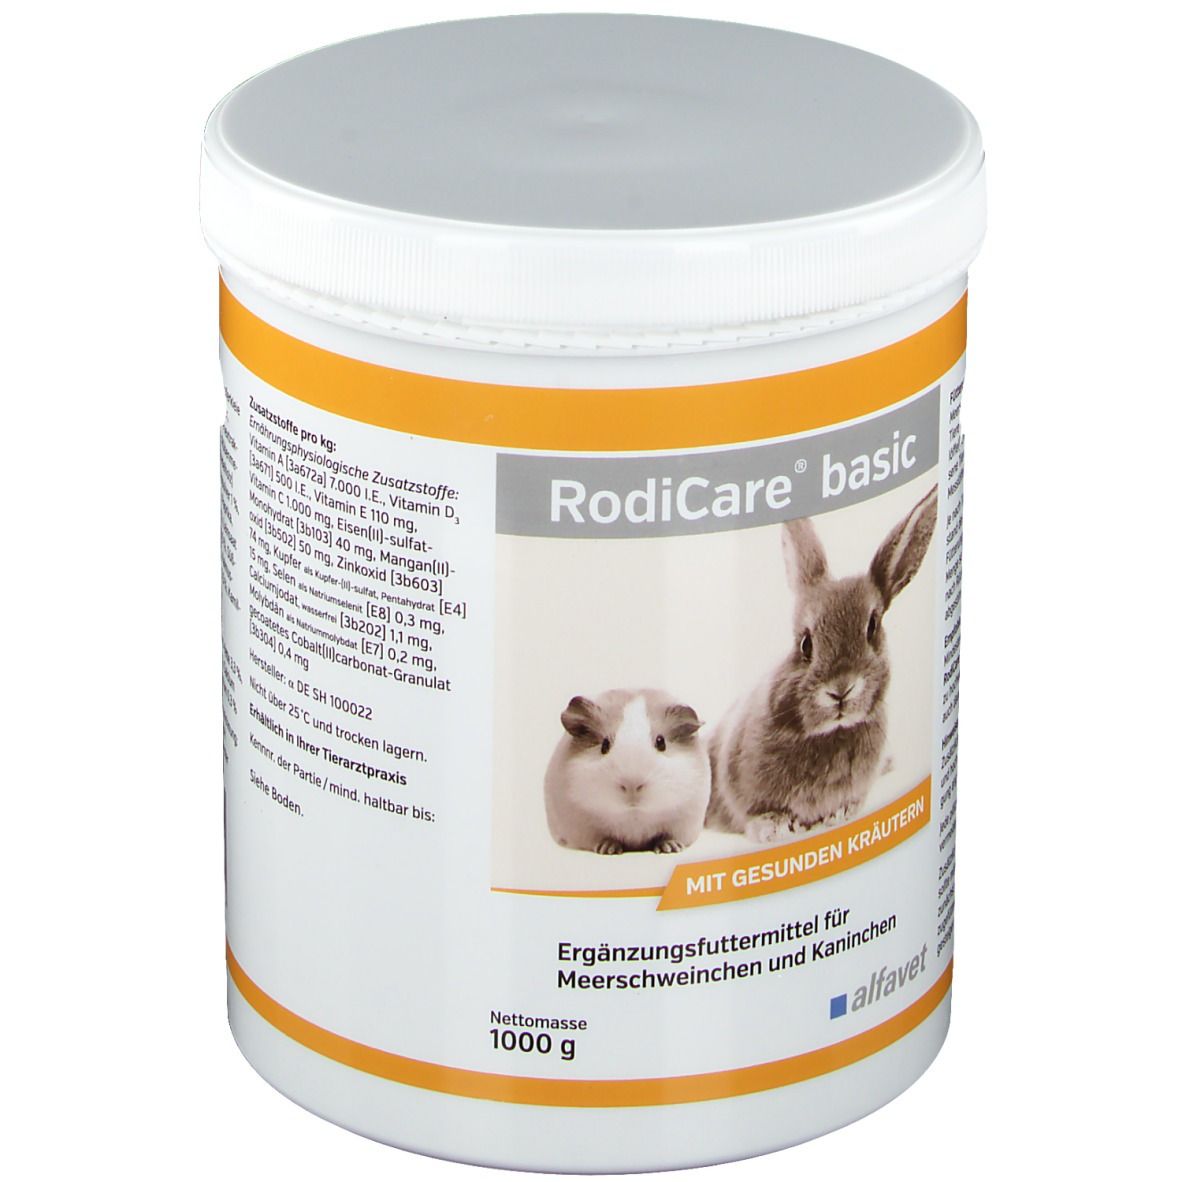 RodiCare® basic für Meerschweinchen und Kaninchen